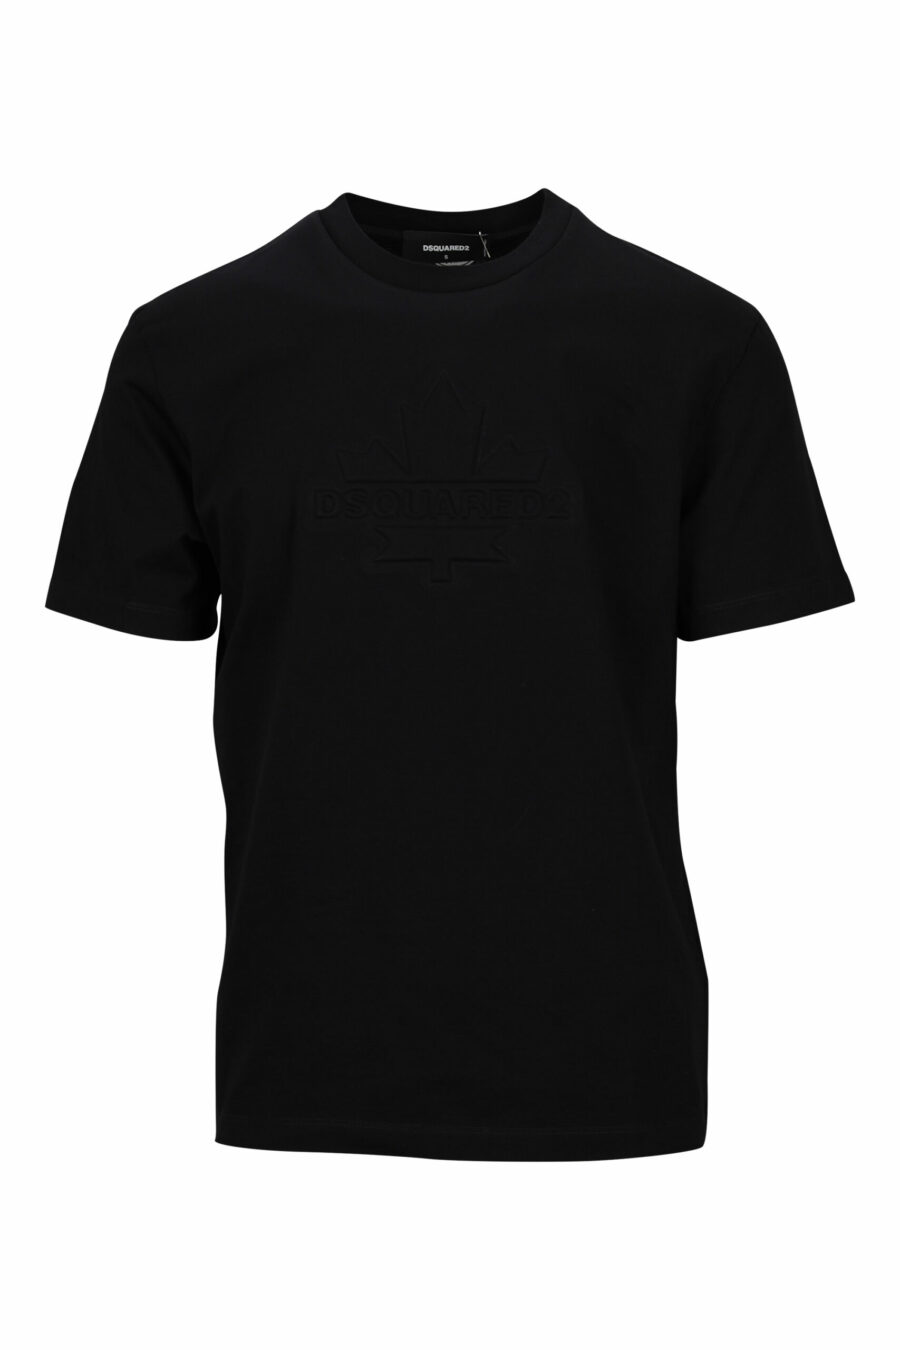 Camiseta negra con maxilogo hoja monocromático en relieve - 8054148265908 scaled